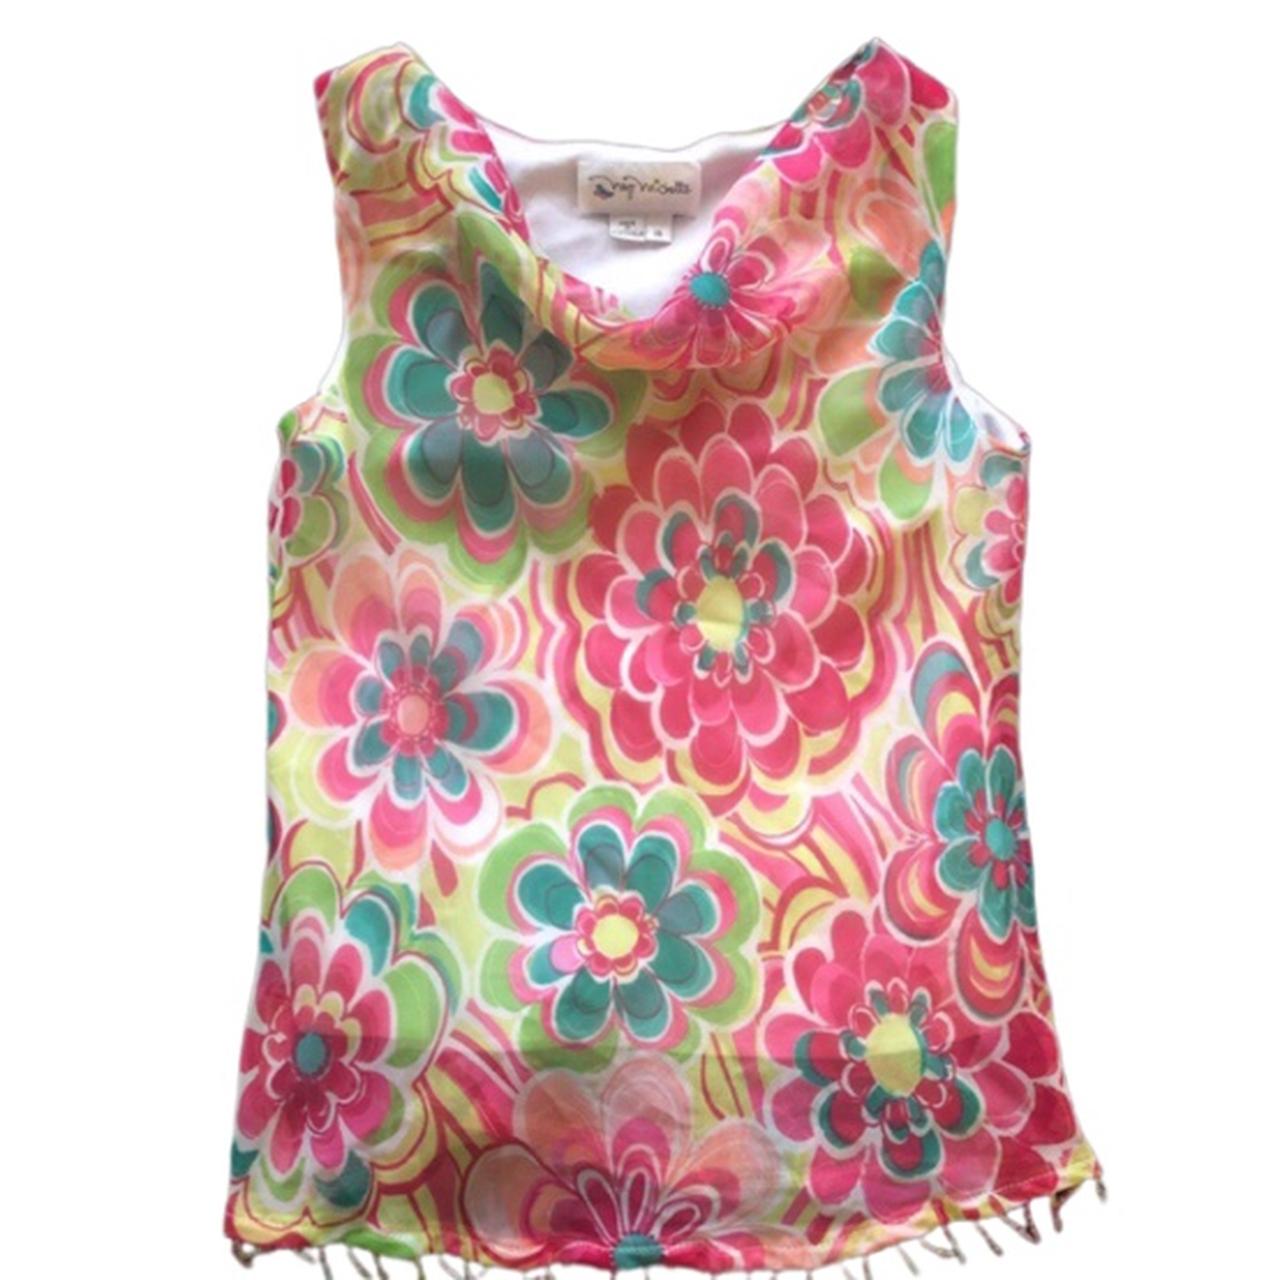 Product Image 1 - Floral Fairycore Sleeveless Embellished Blouse

Sheer